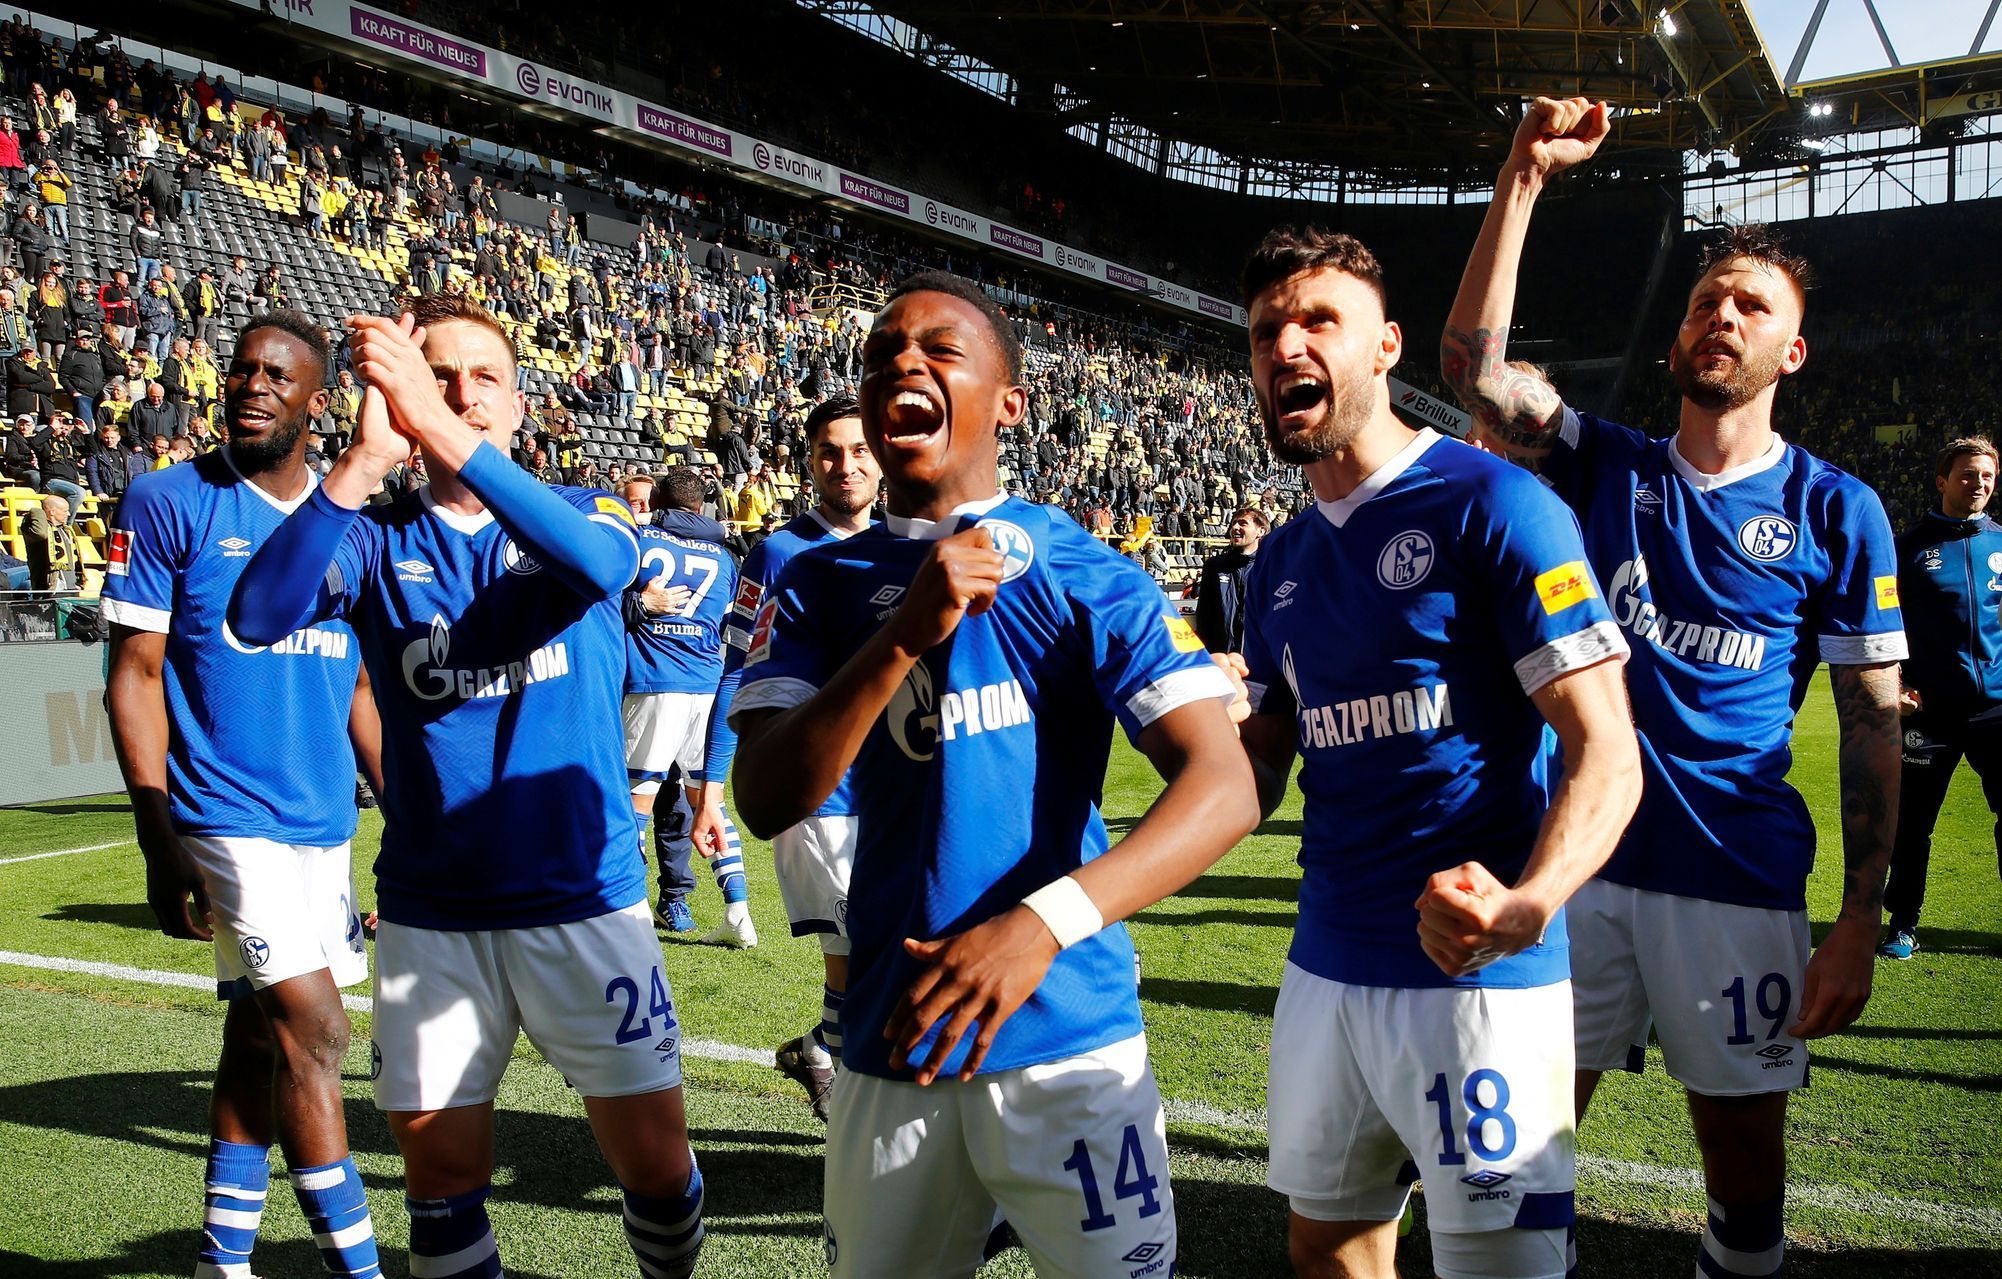 31. kolo německé fotbalové ligy, Dortmund - Schalke: Fotbalisté Schalke oslavují vítězství 4:2.